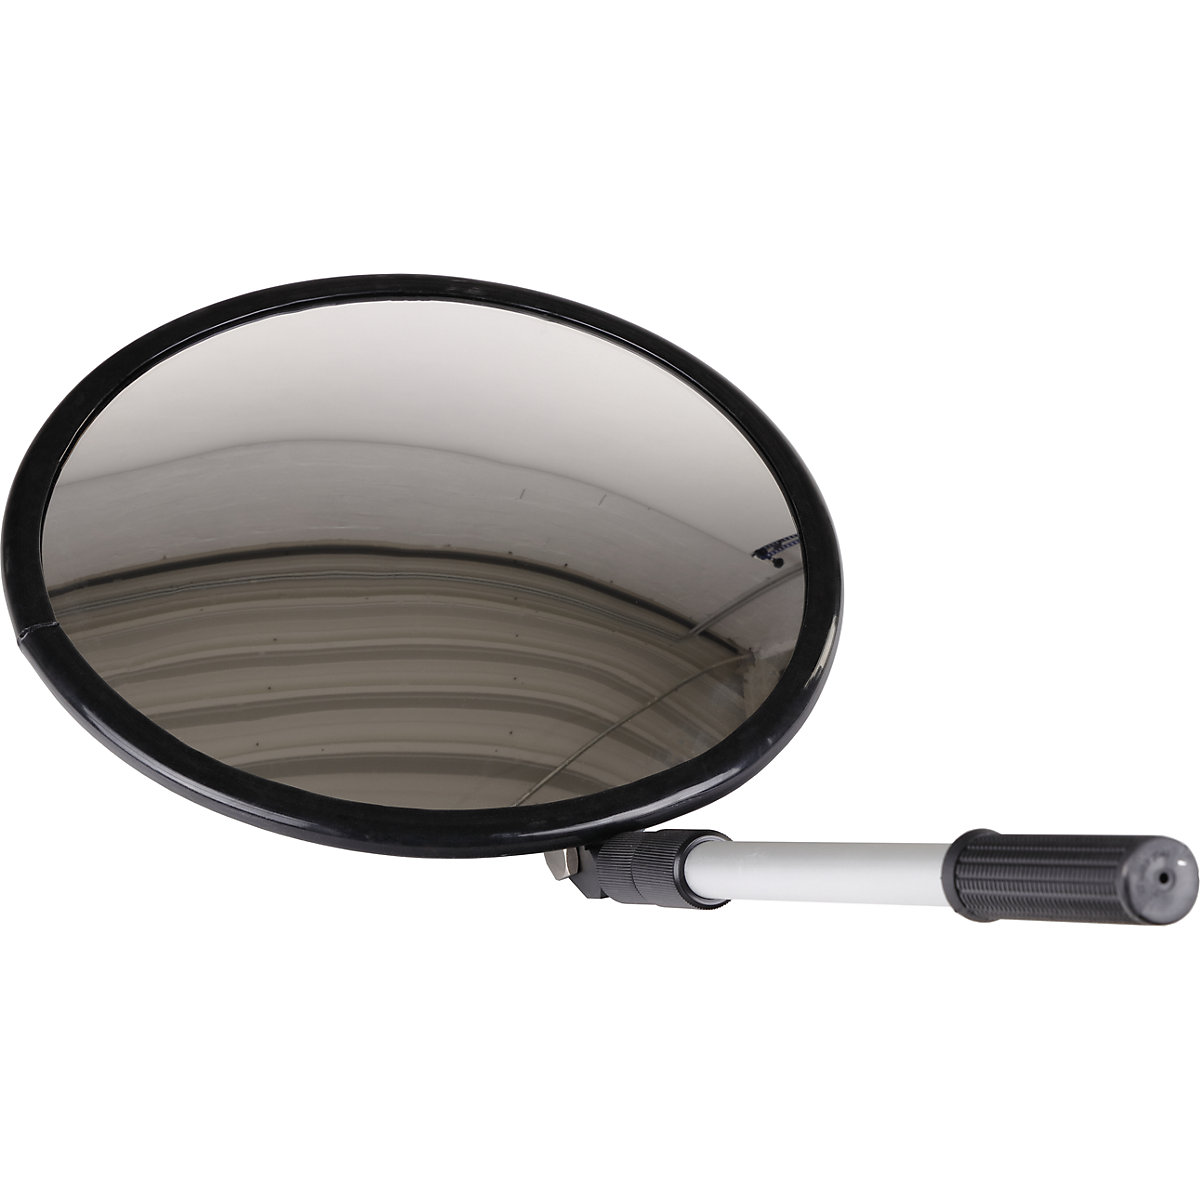 Inspekcijsko zrcalo s teleskopskim krakom